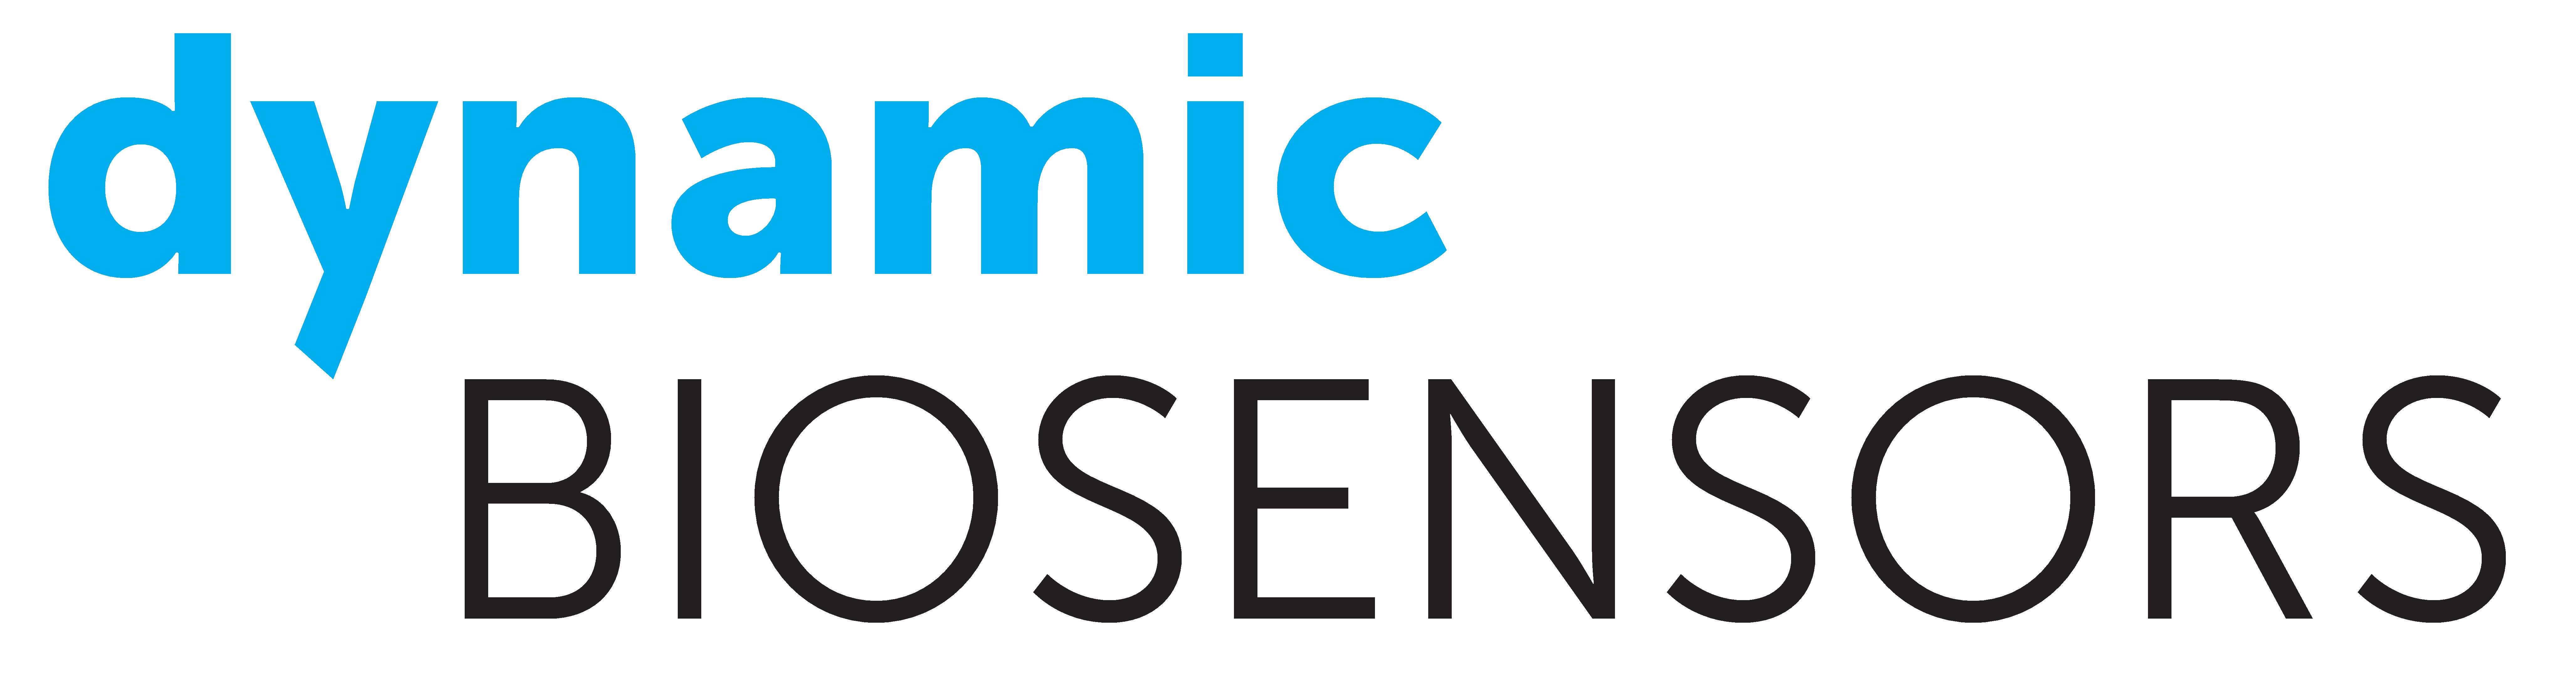 Dynamic Biosensors Shop, Inc.